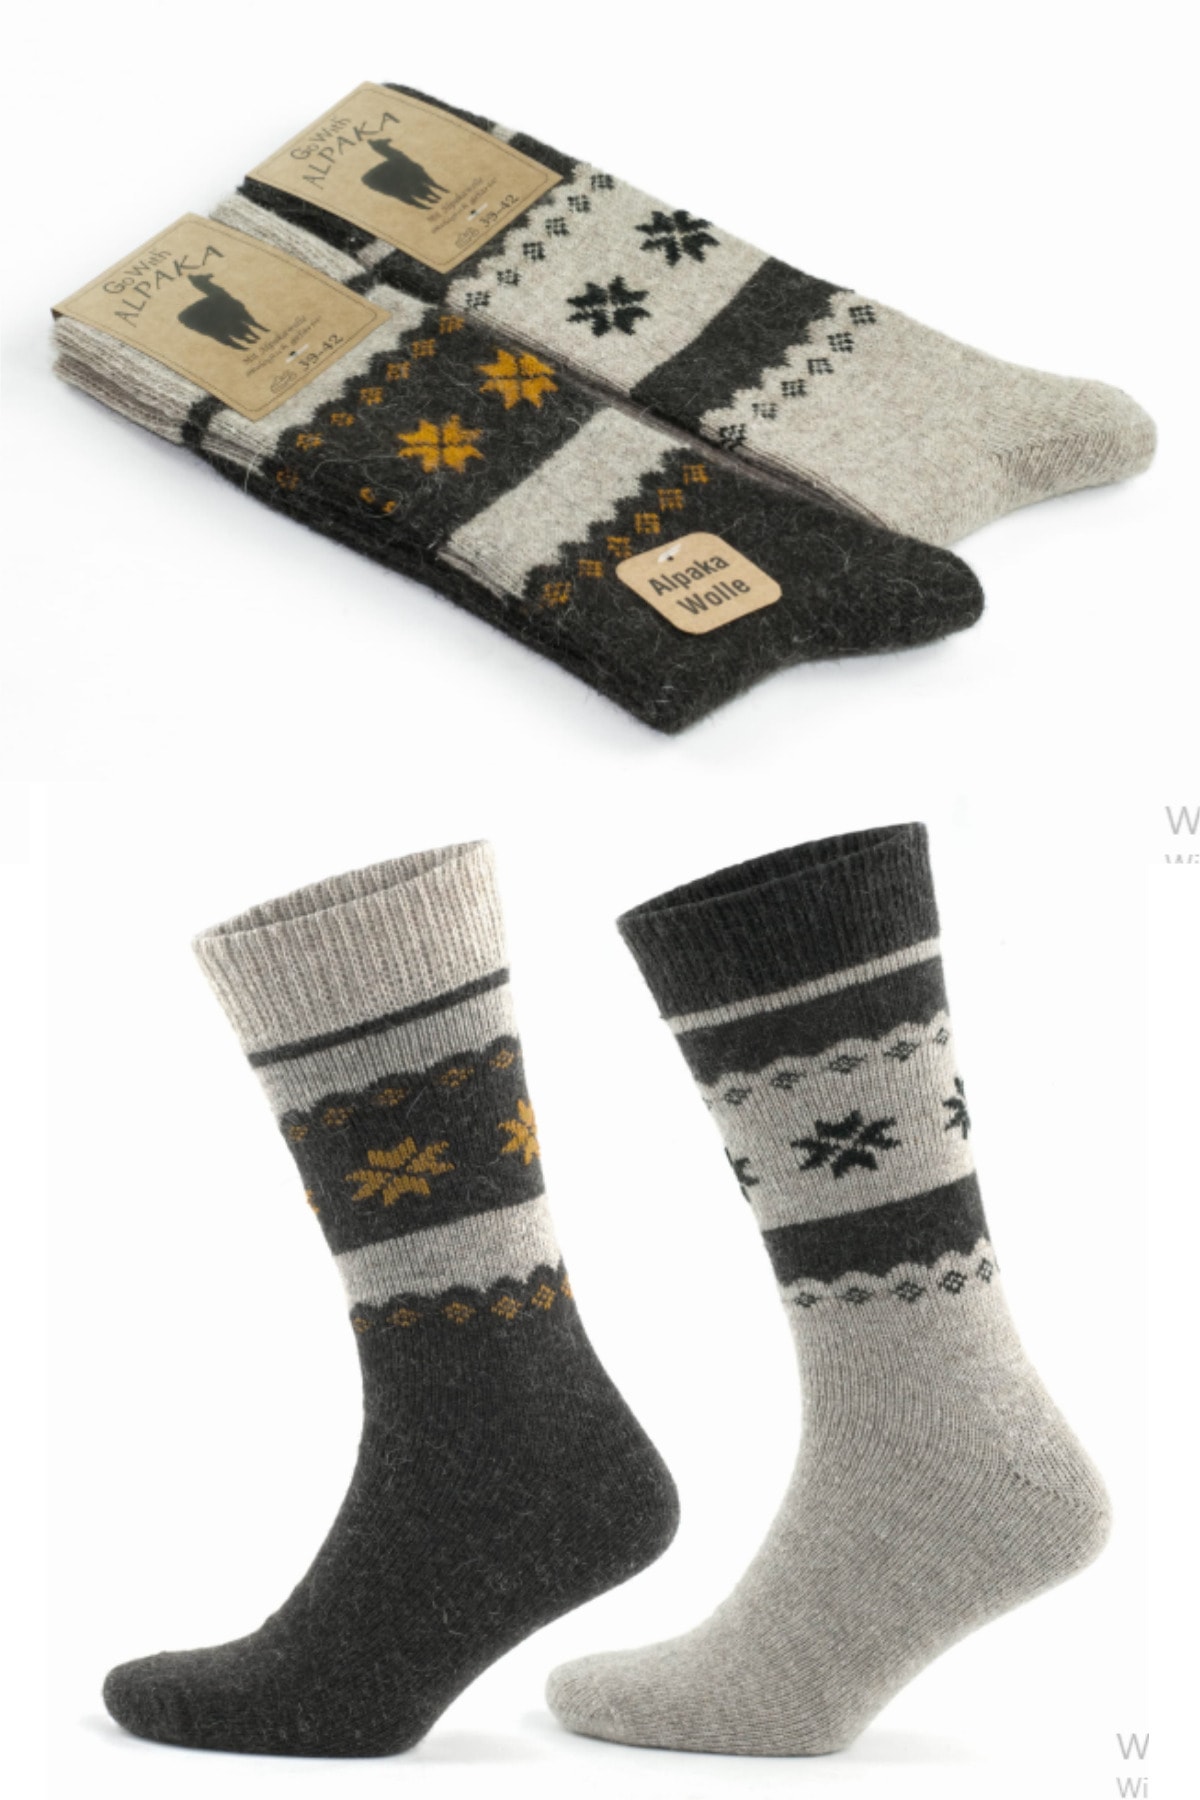 socksbox Alpaka Doğal Yün Termal Kış Temalı Çorap 2 Çift